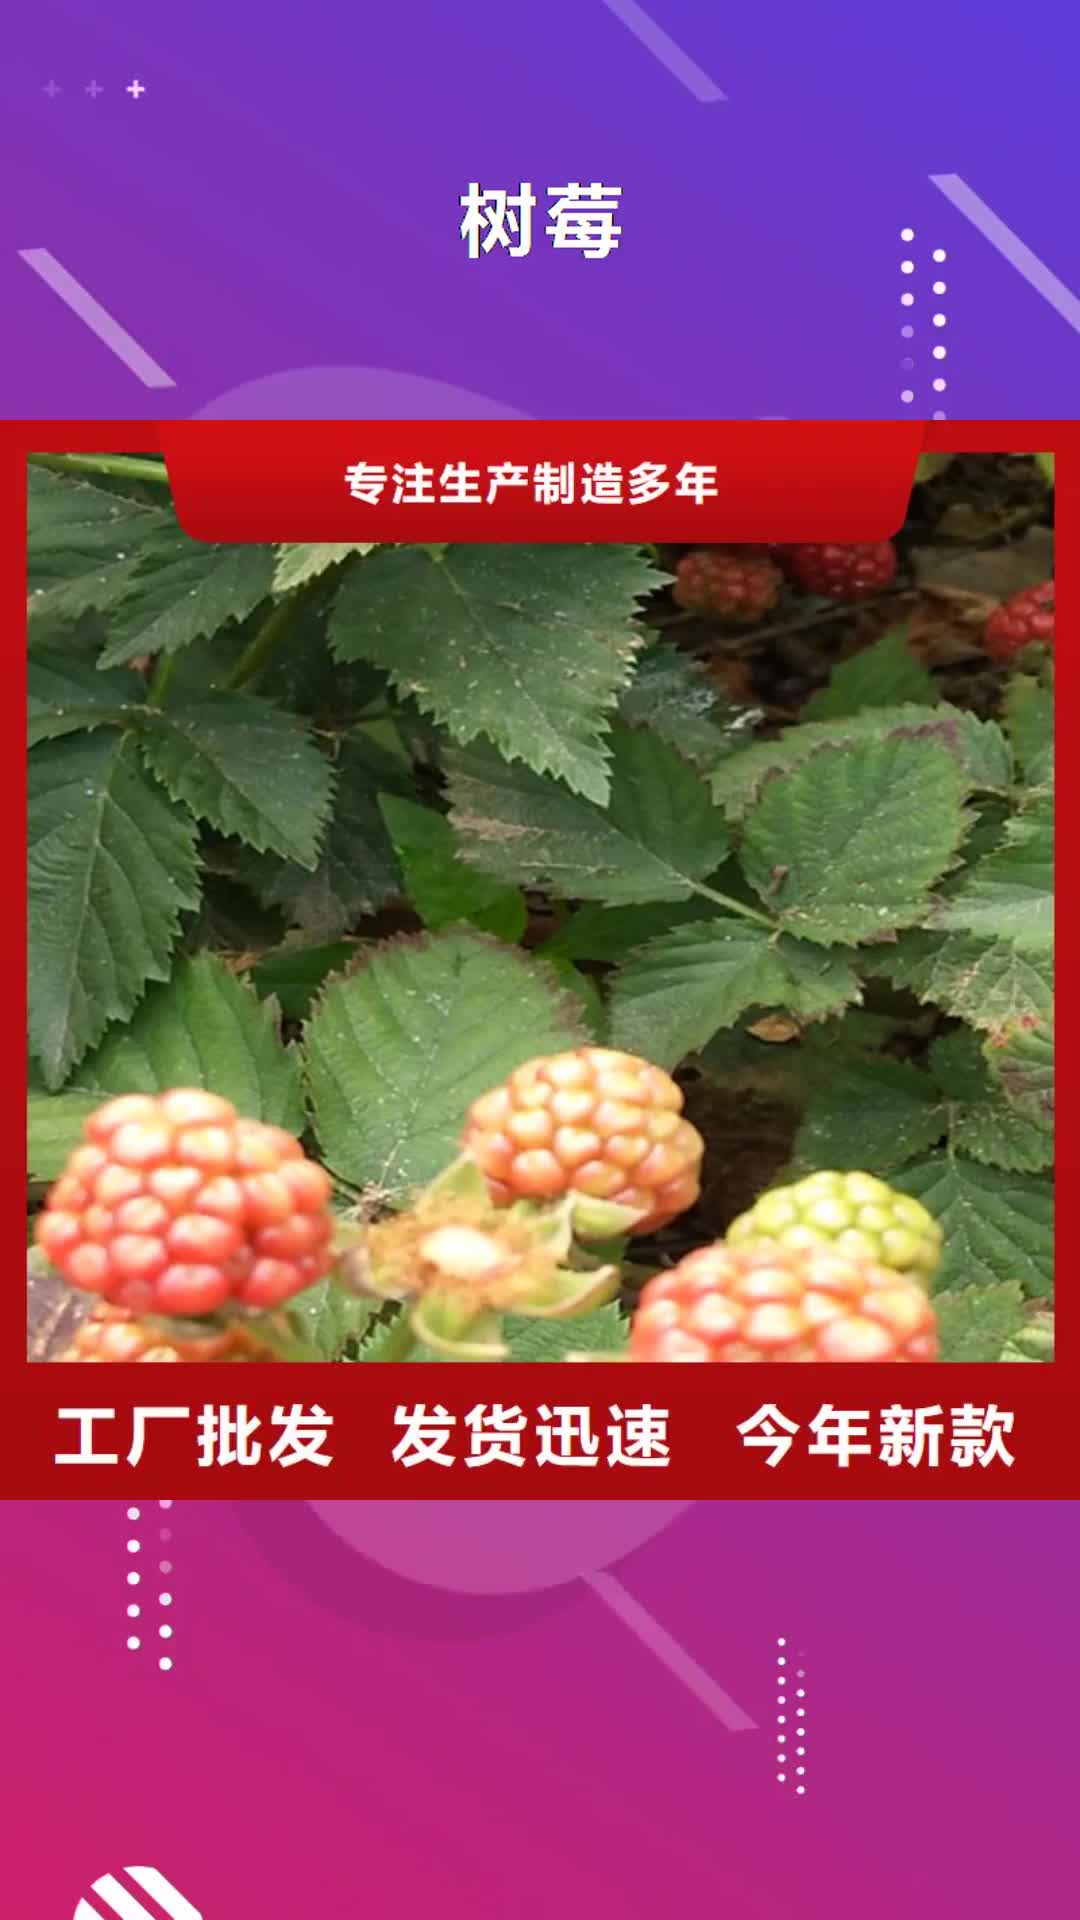 【泉州 树莓,梨树苗品牌专营】